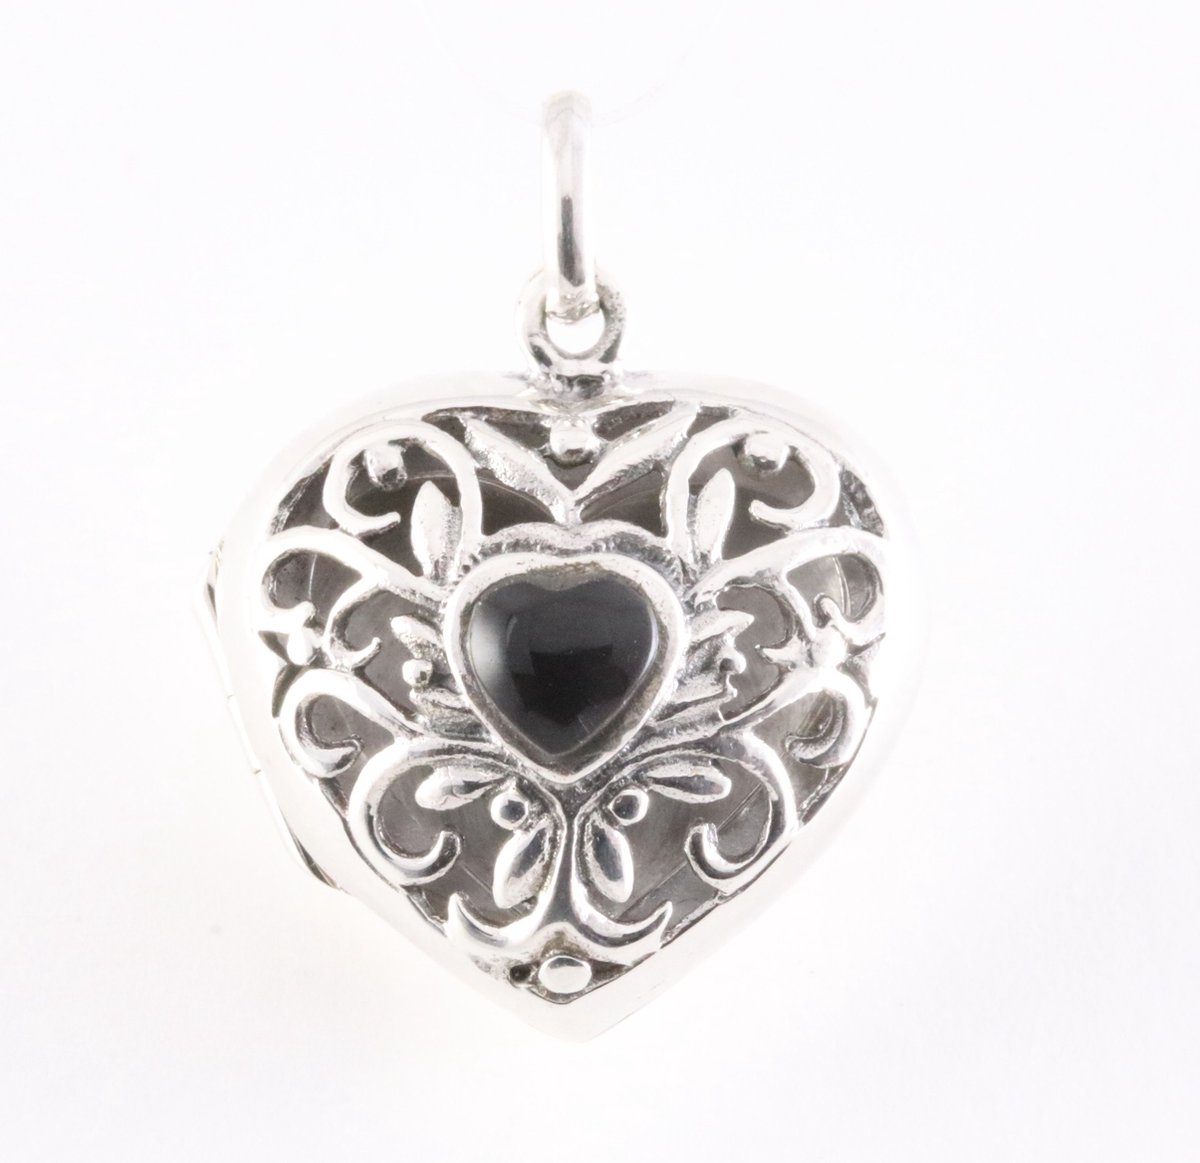 Opengewerkt hartvormig zilveren medaillon met onyx